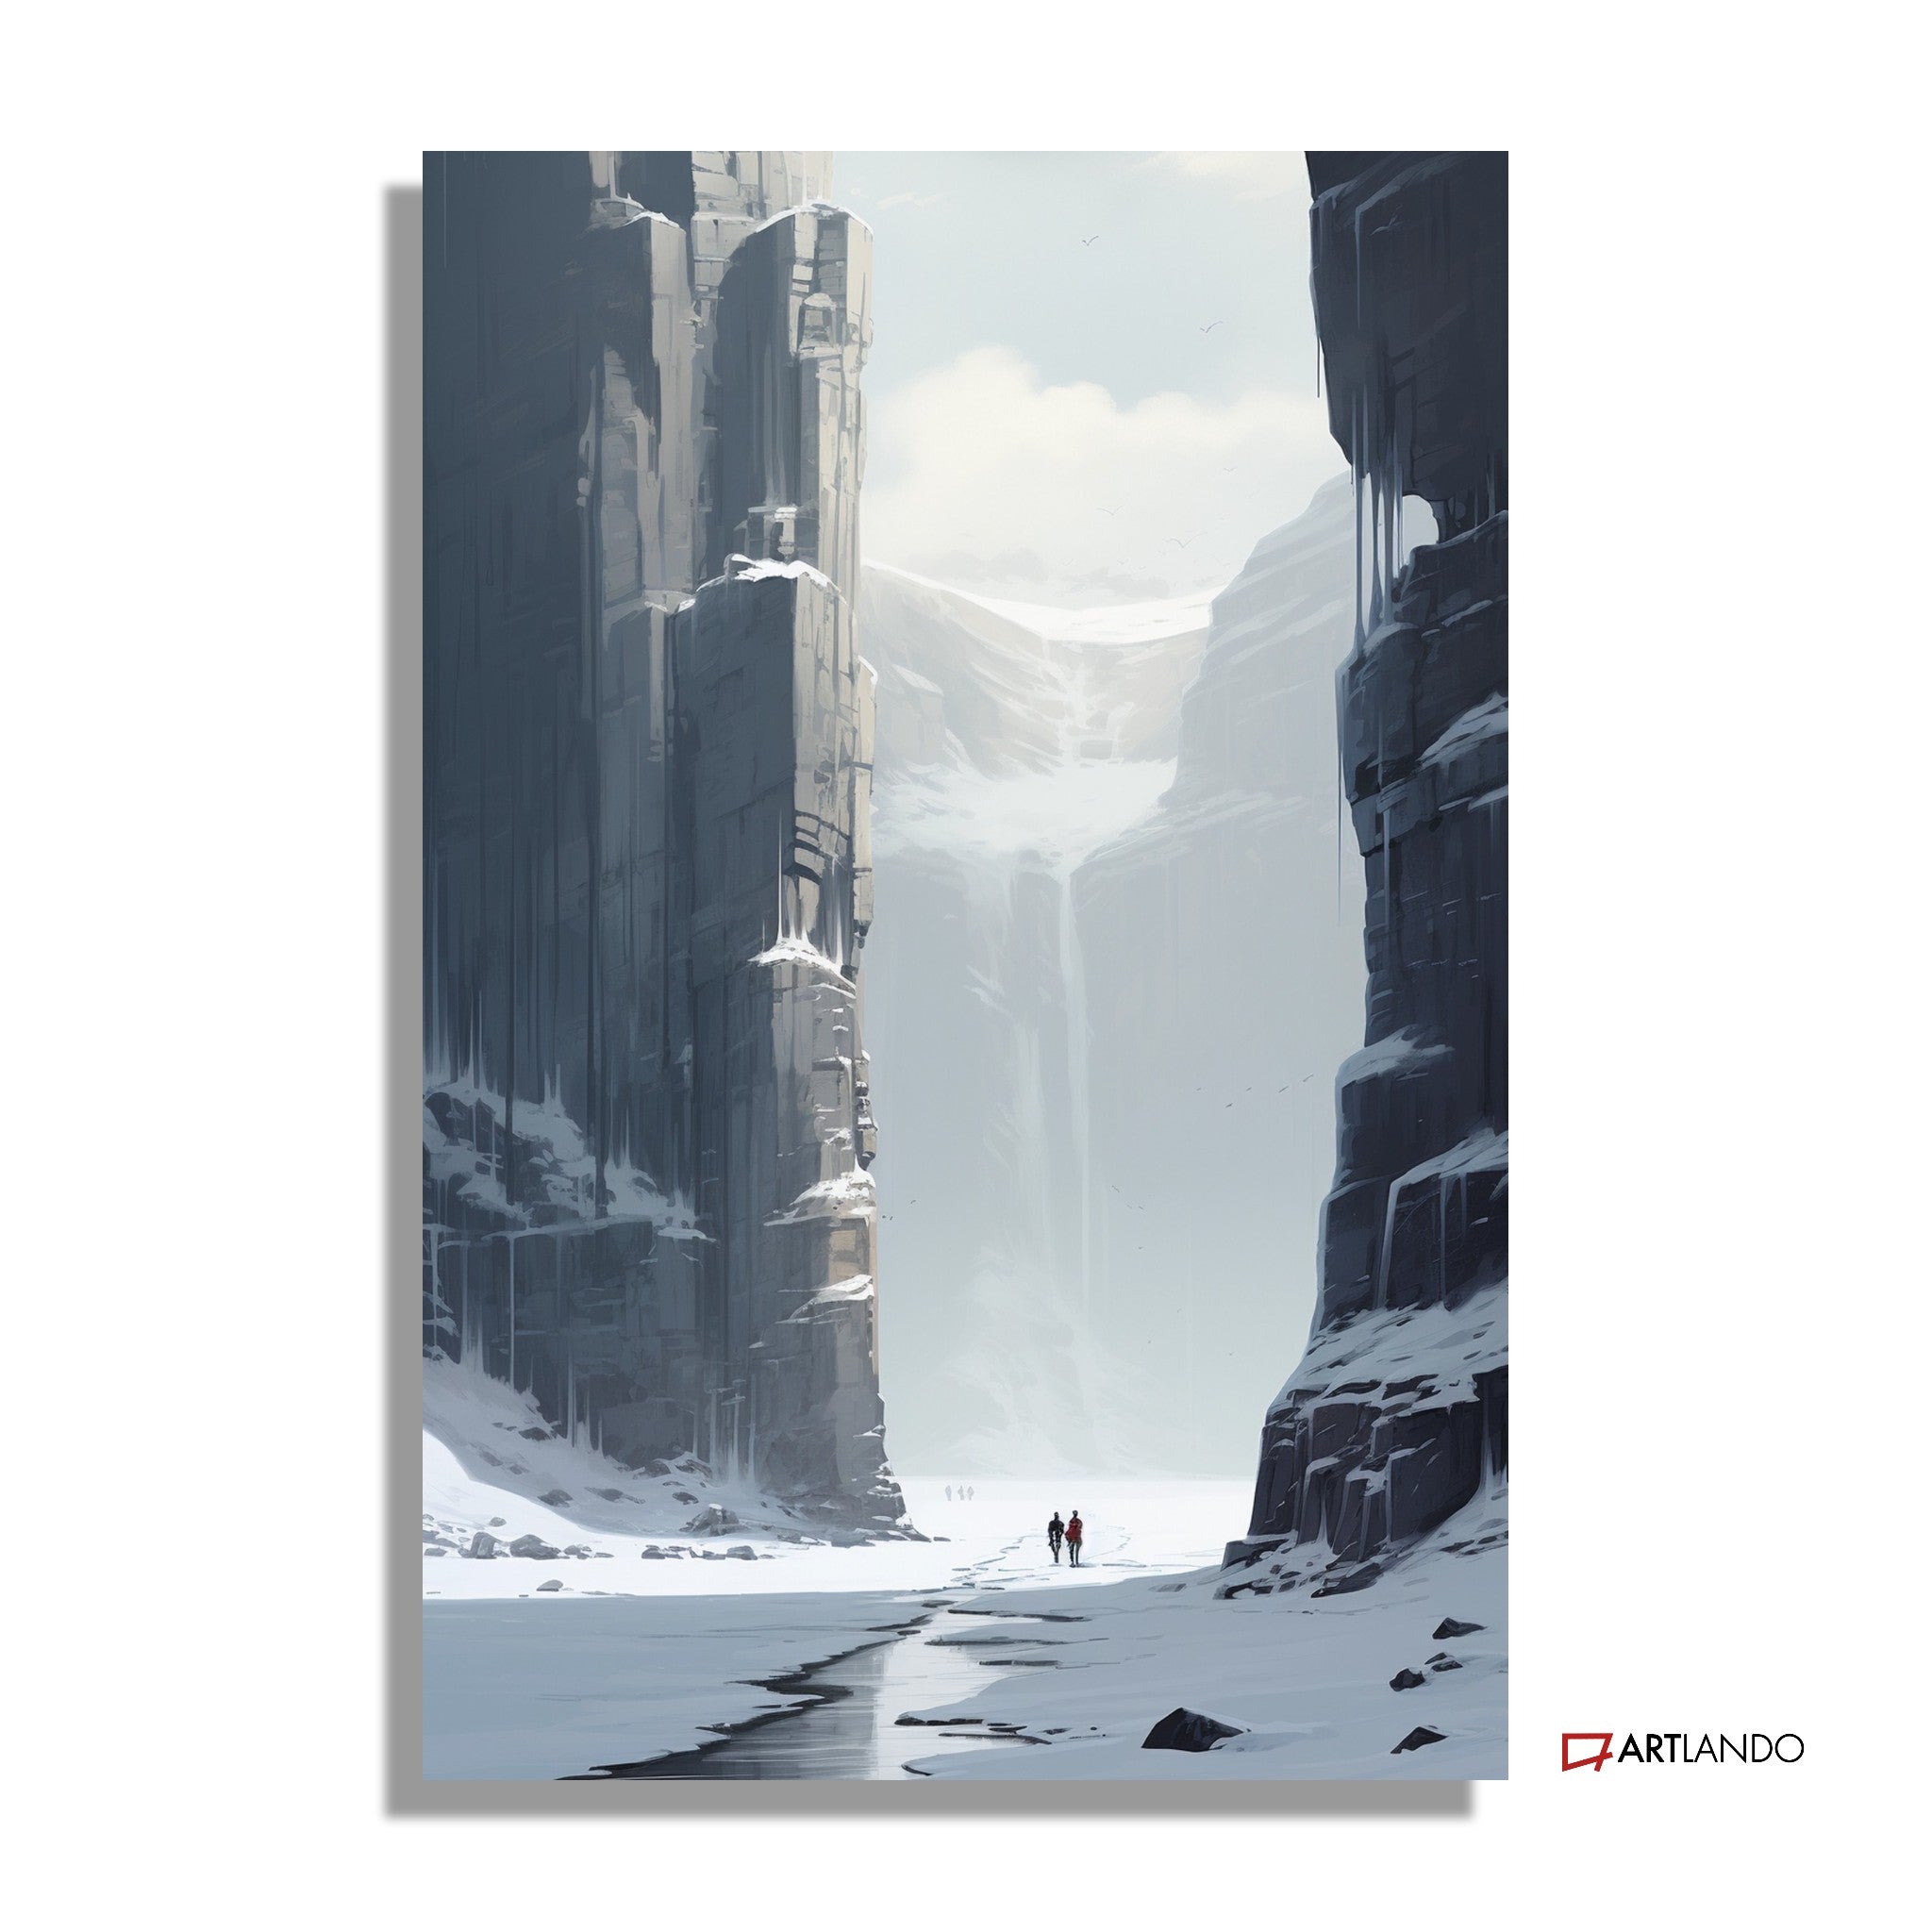 Zwei Menschen wandern durch tiefes verschneites Tal